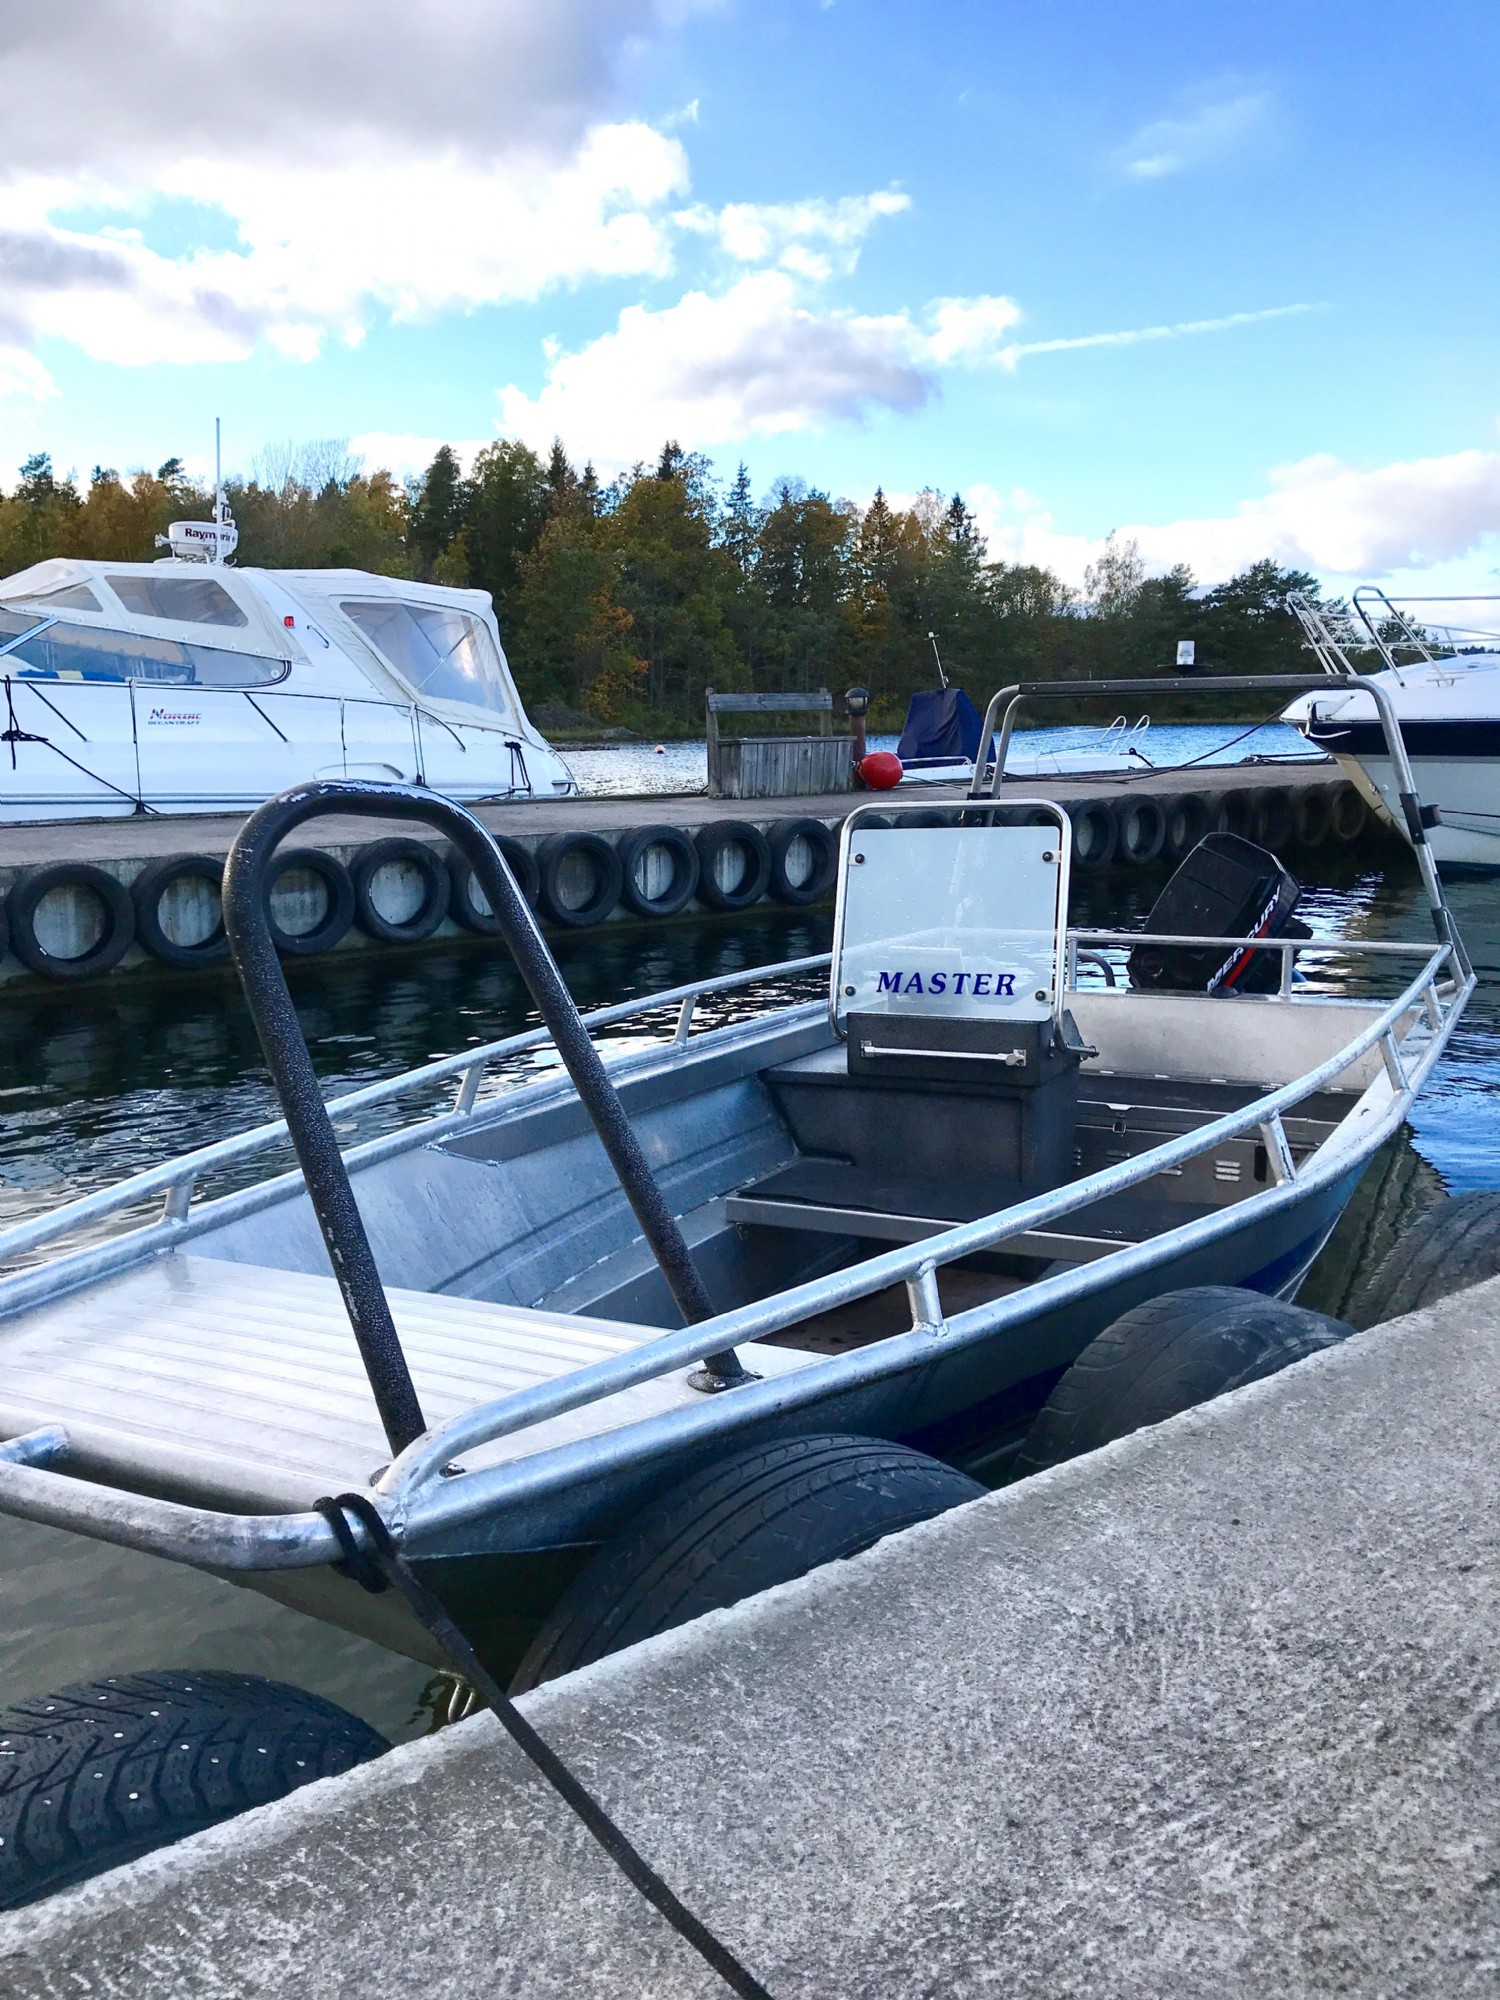 Motorbt att hyra p frfrgan/ Motor boat to rent at request 